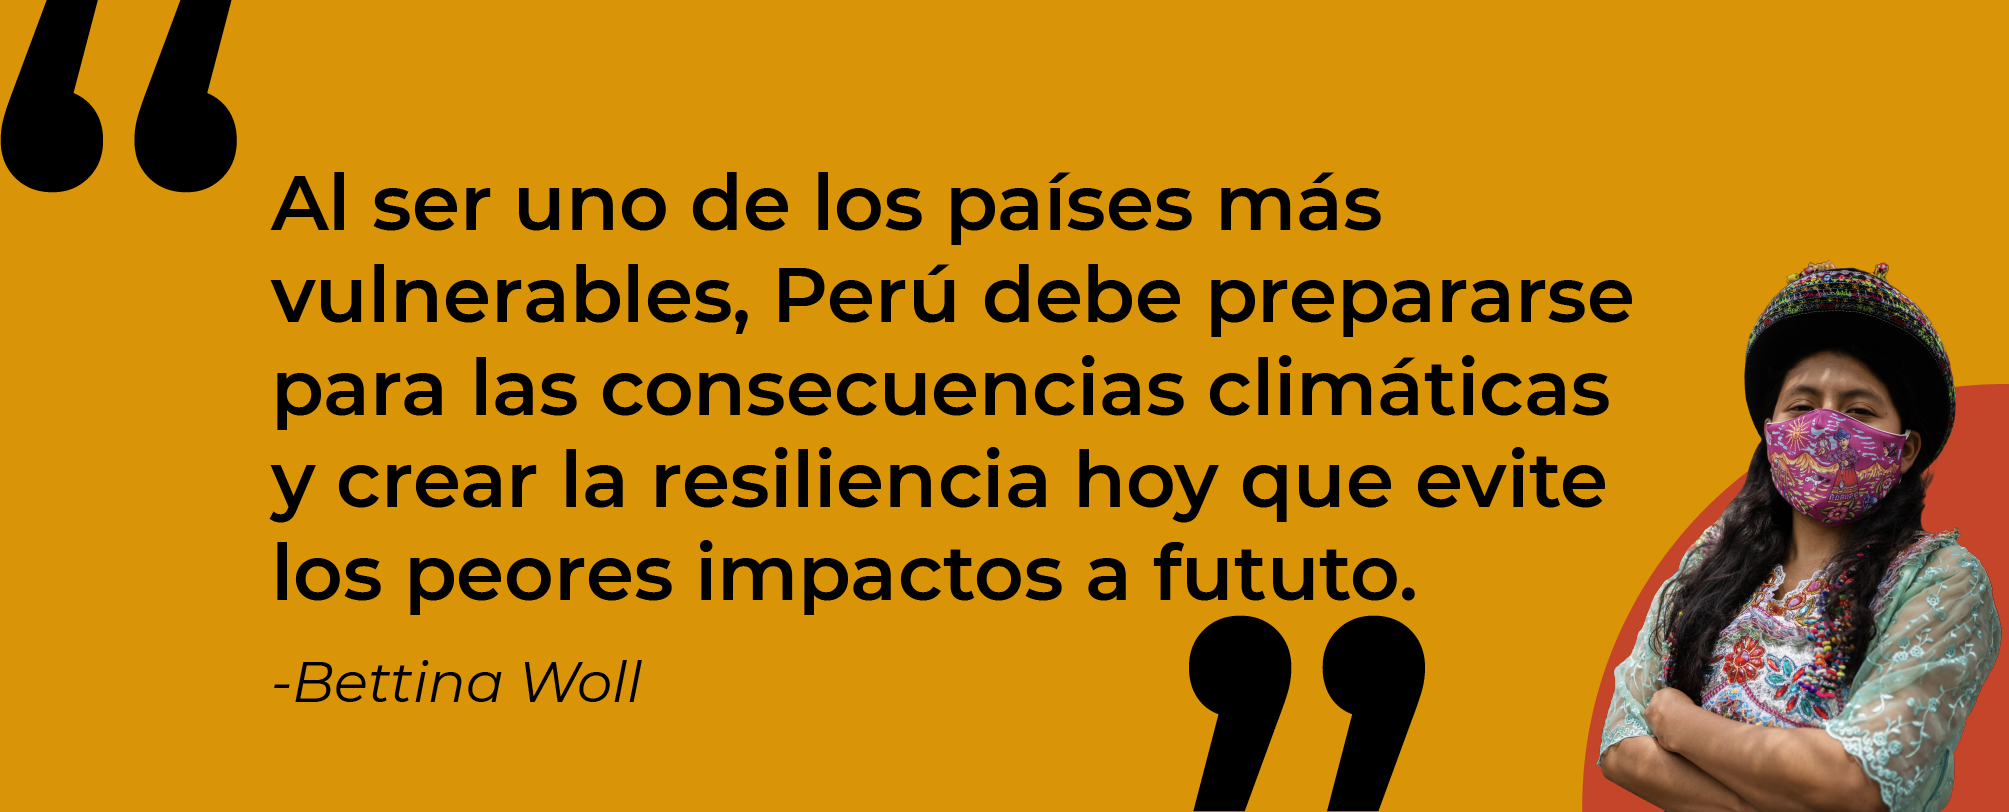 "Al ser uno de los países más vulnerables, Perú debe prepararse para las consecuencias climáticas y crear la resiliencia hoy que evite peores impactos a futuro" - Bettina Woll